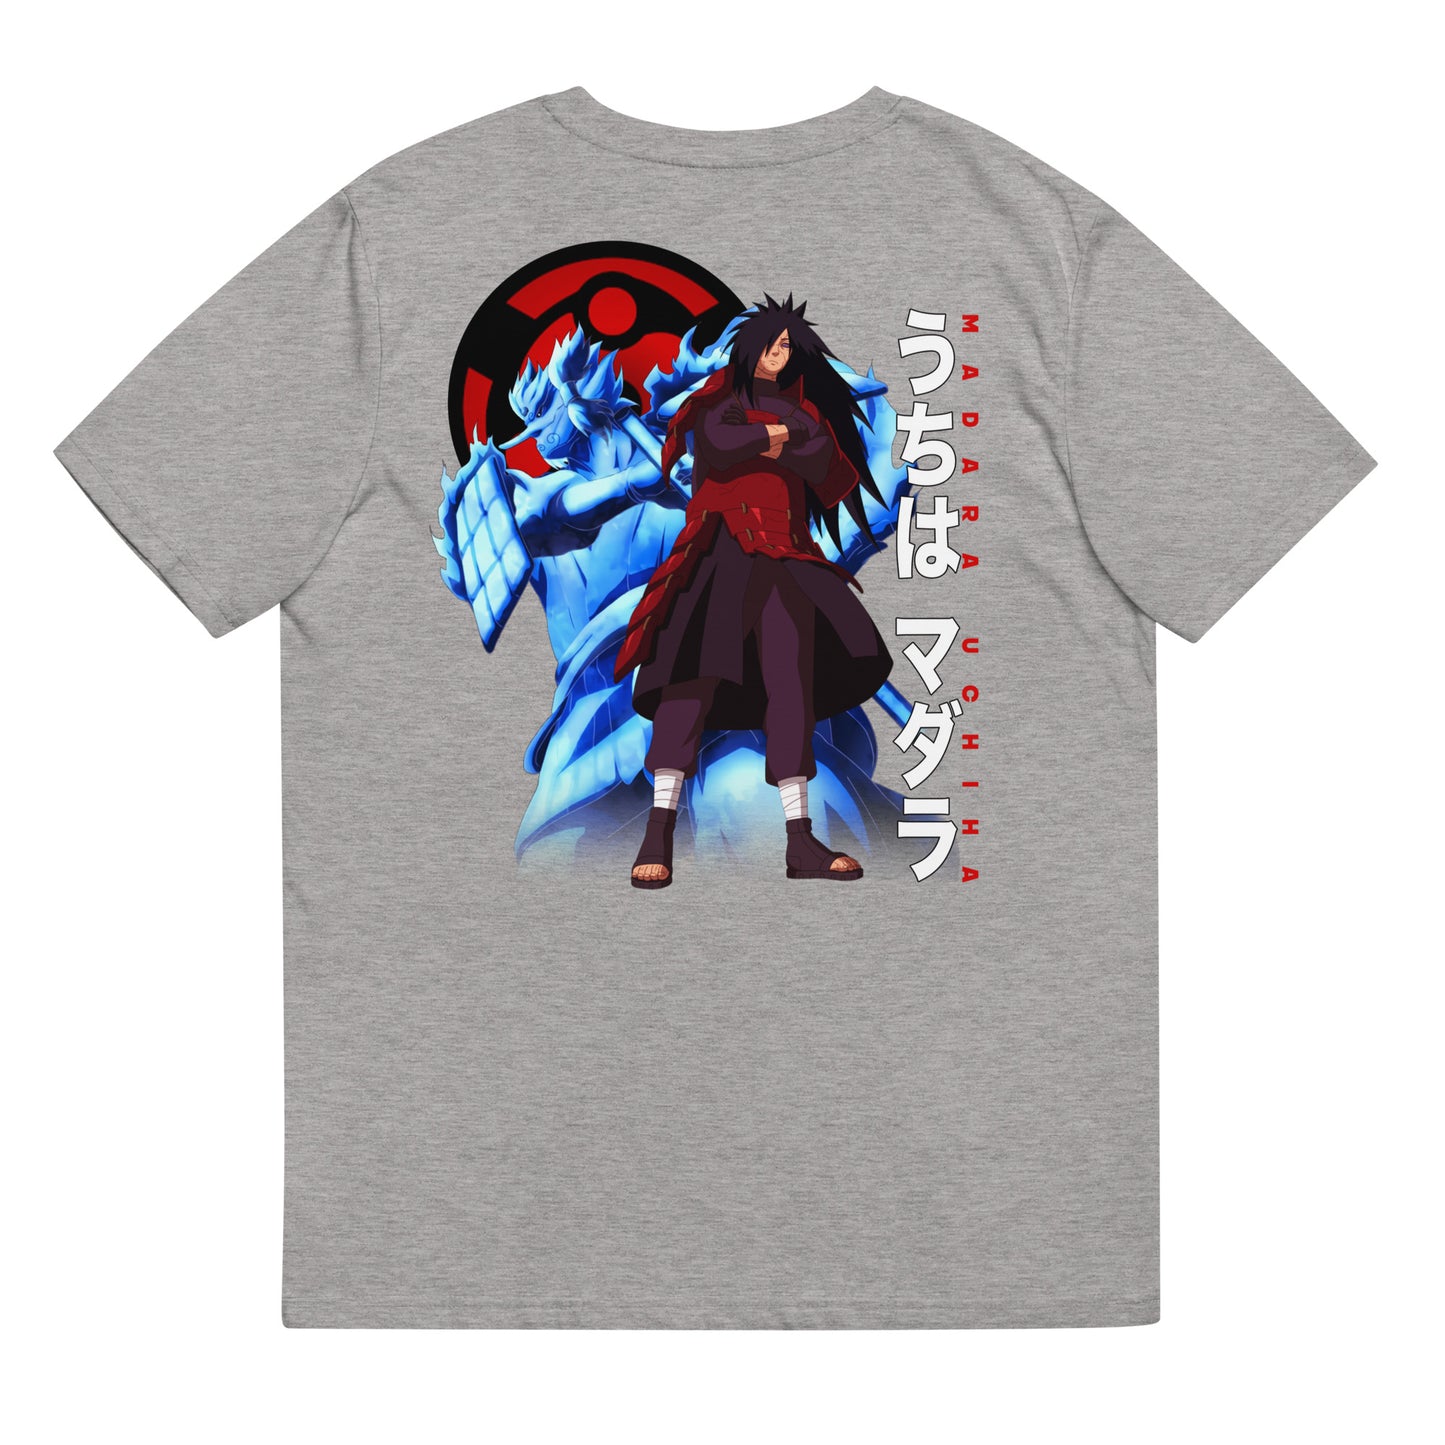 Madara T-Shirt, Naruto Anime